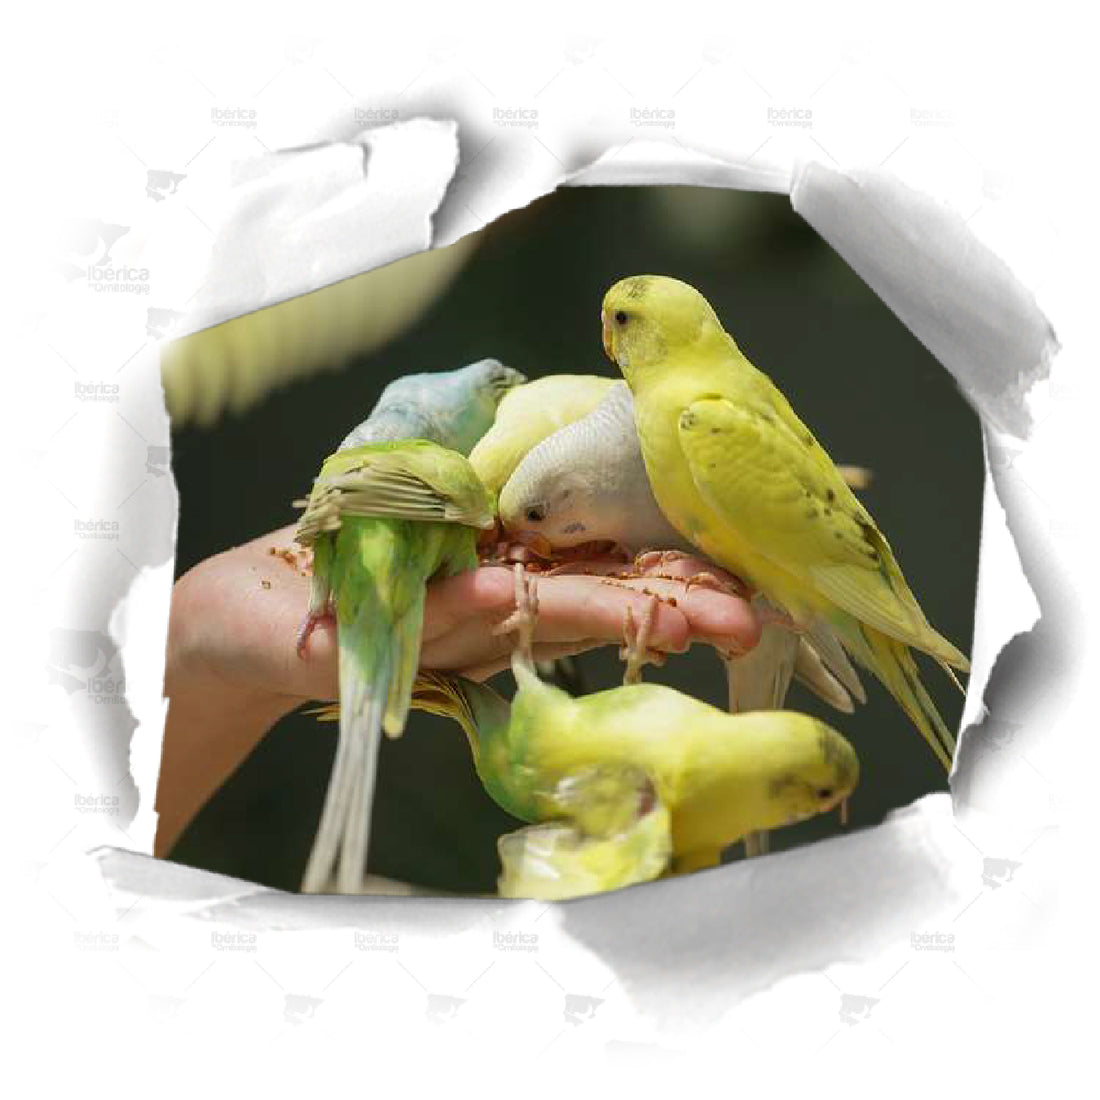 Alimentación durante la muda en pájaros.  Requerimientos imprescindibles para potenciar la formación de plumas nuevas en las aves.